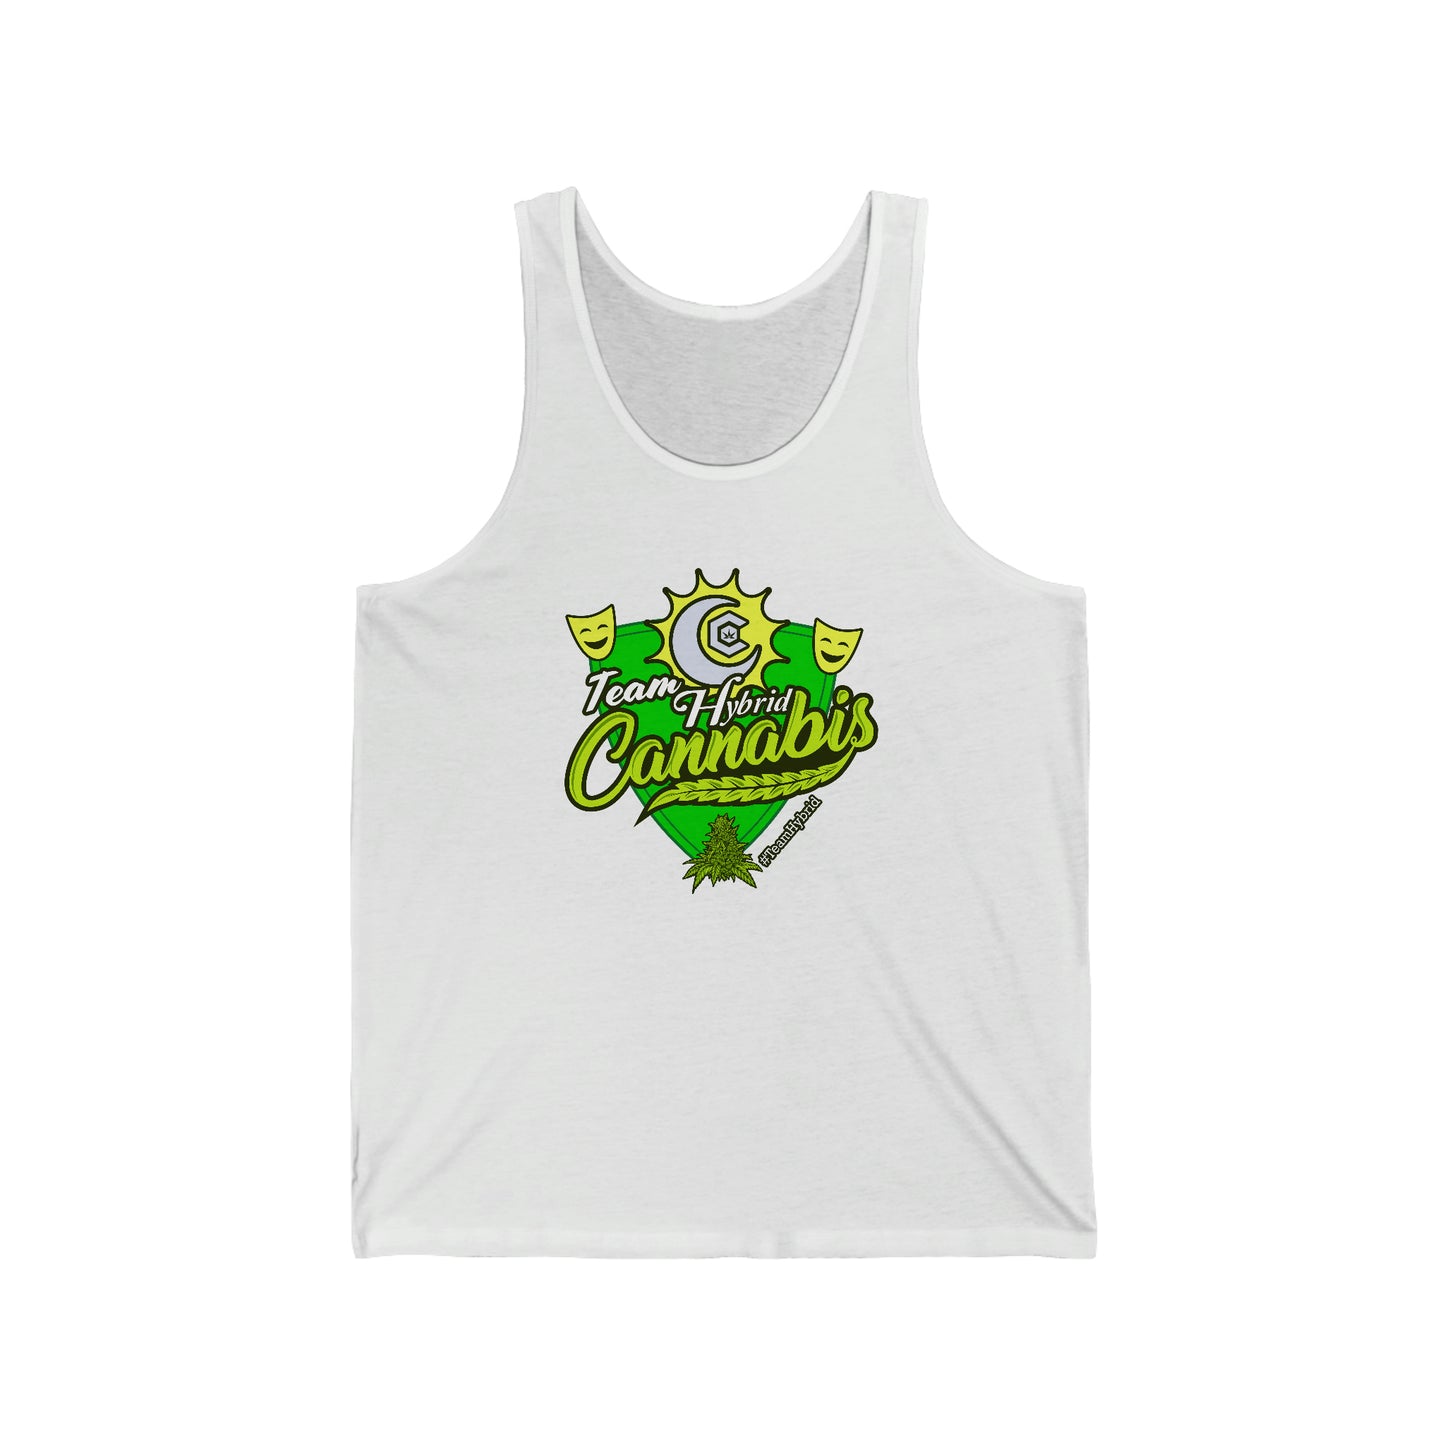 a white team hybrid cannabis tank top shirt